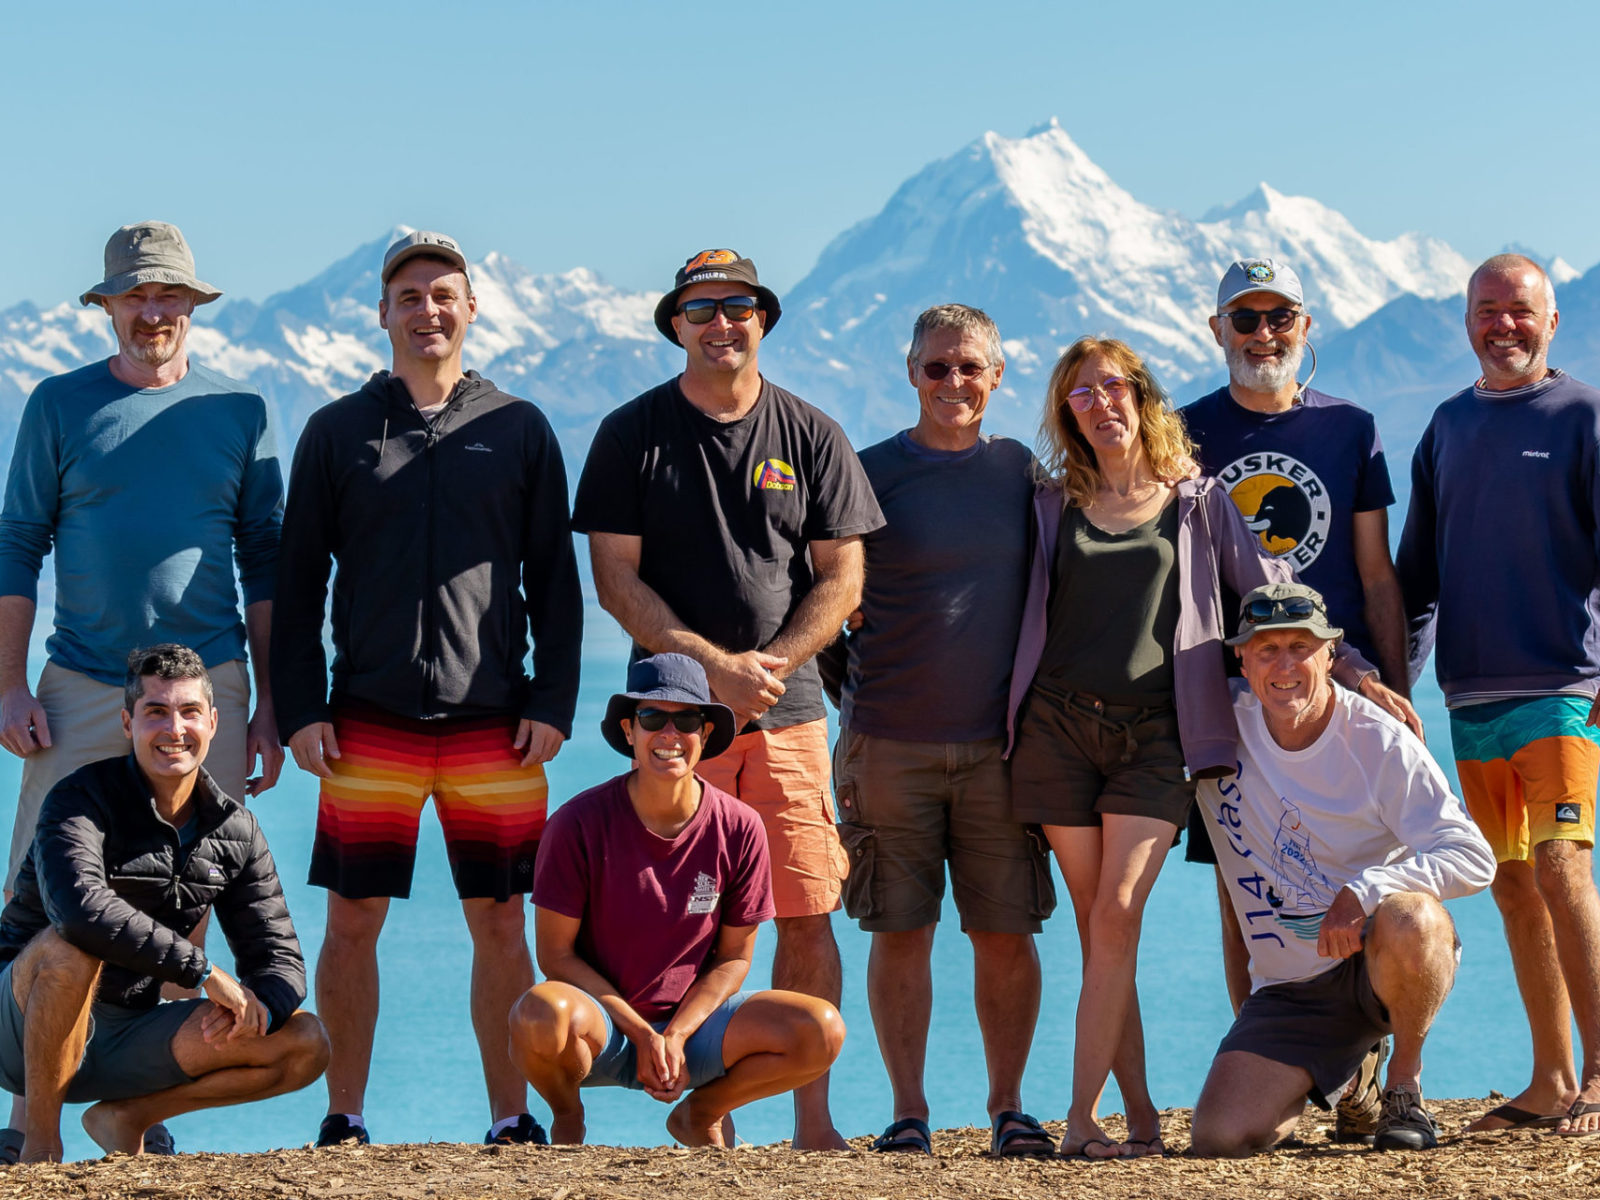 Water Nomads Surfari Trip guests pose in front of Lake Pukaki and Aoraki Mt Cook